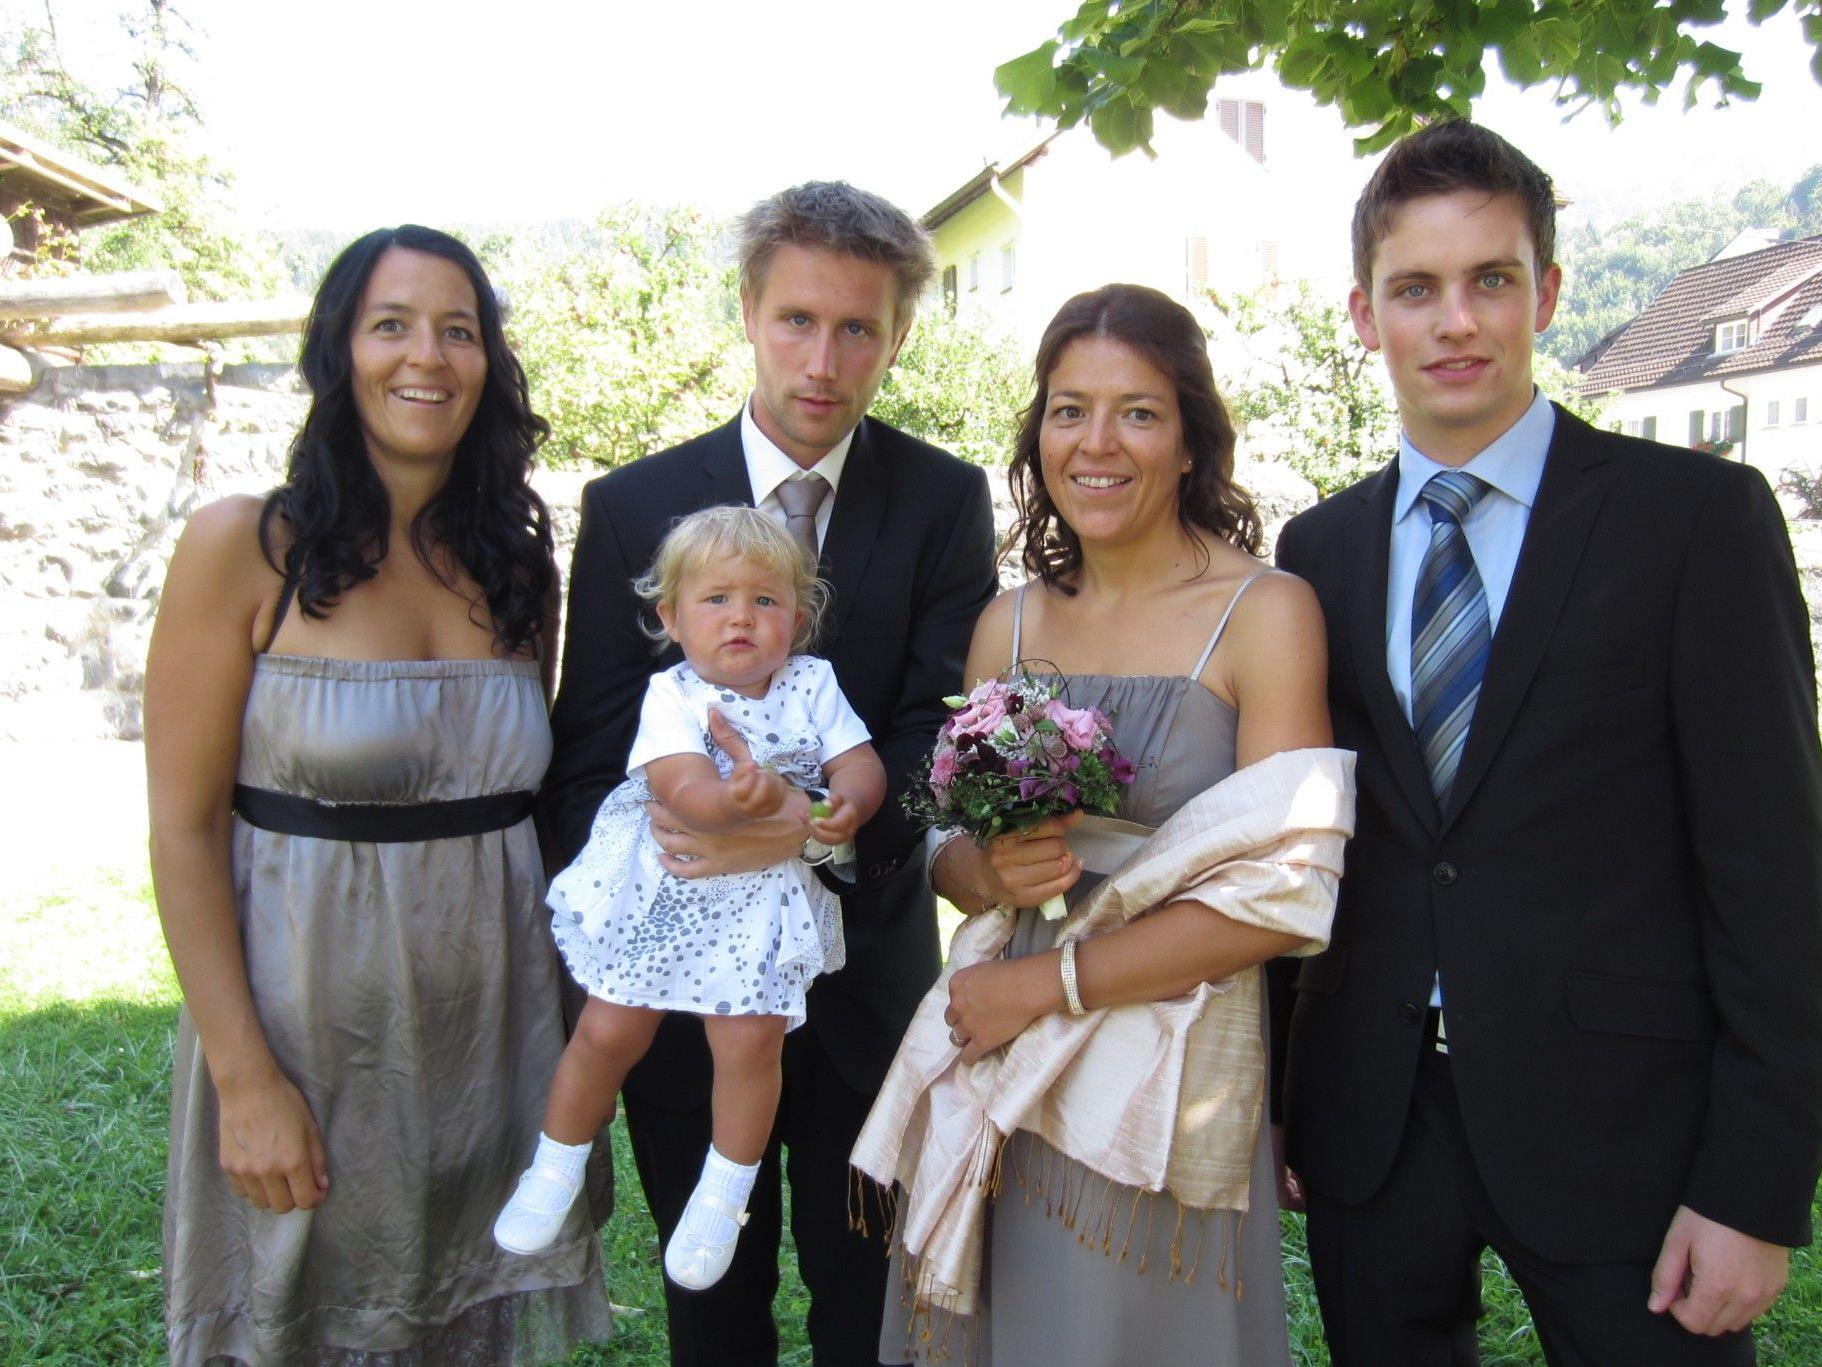 Eva Lederle und Tobias Kühne haben geheiratet.